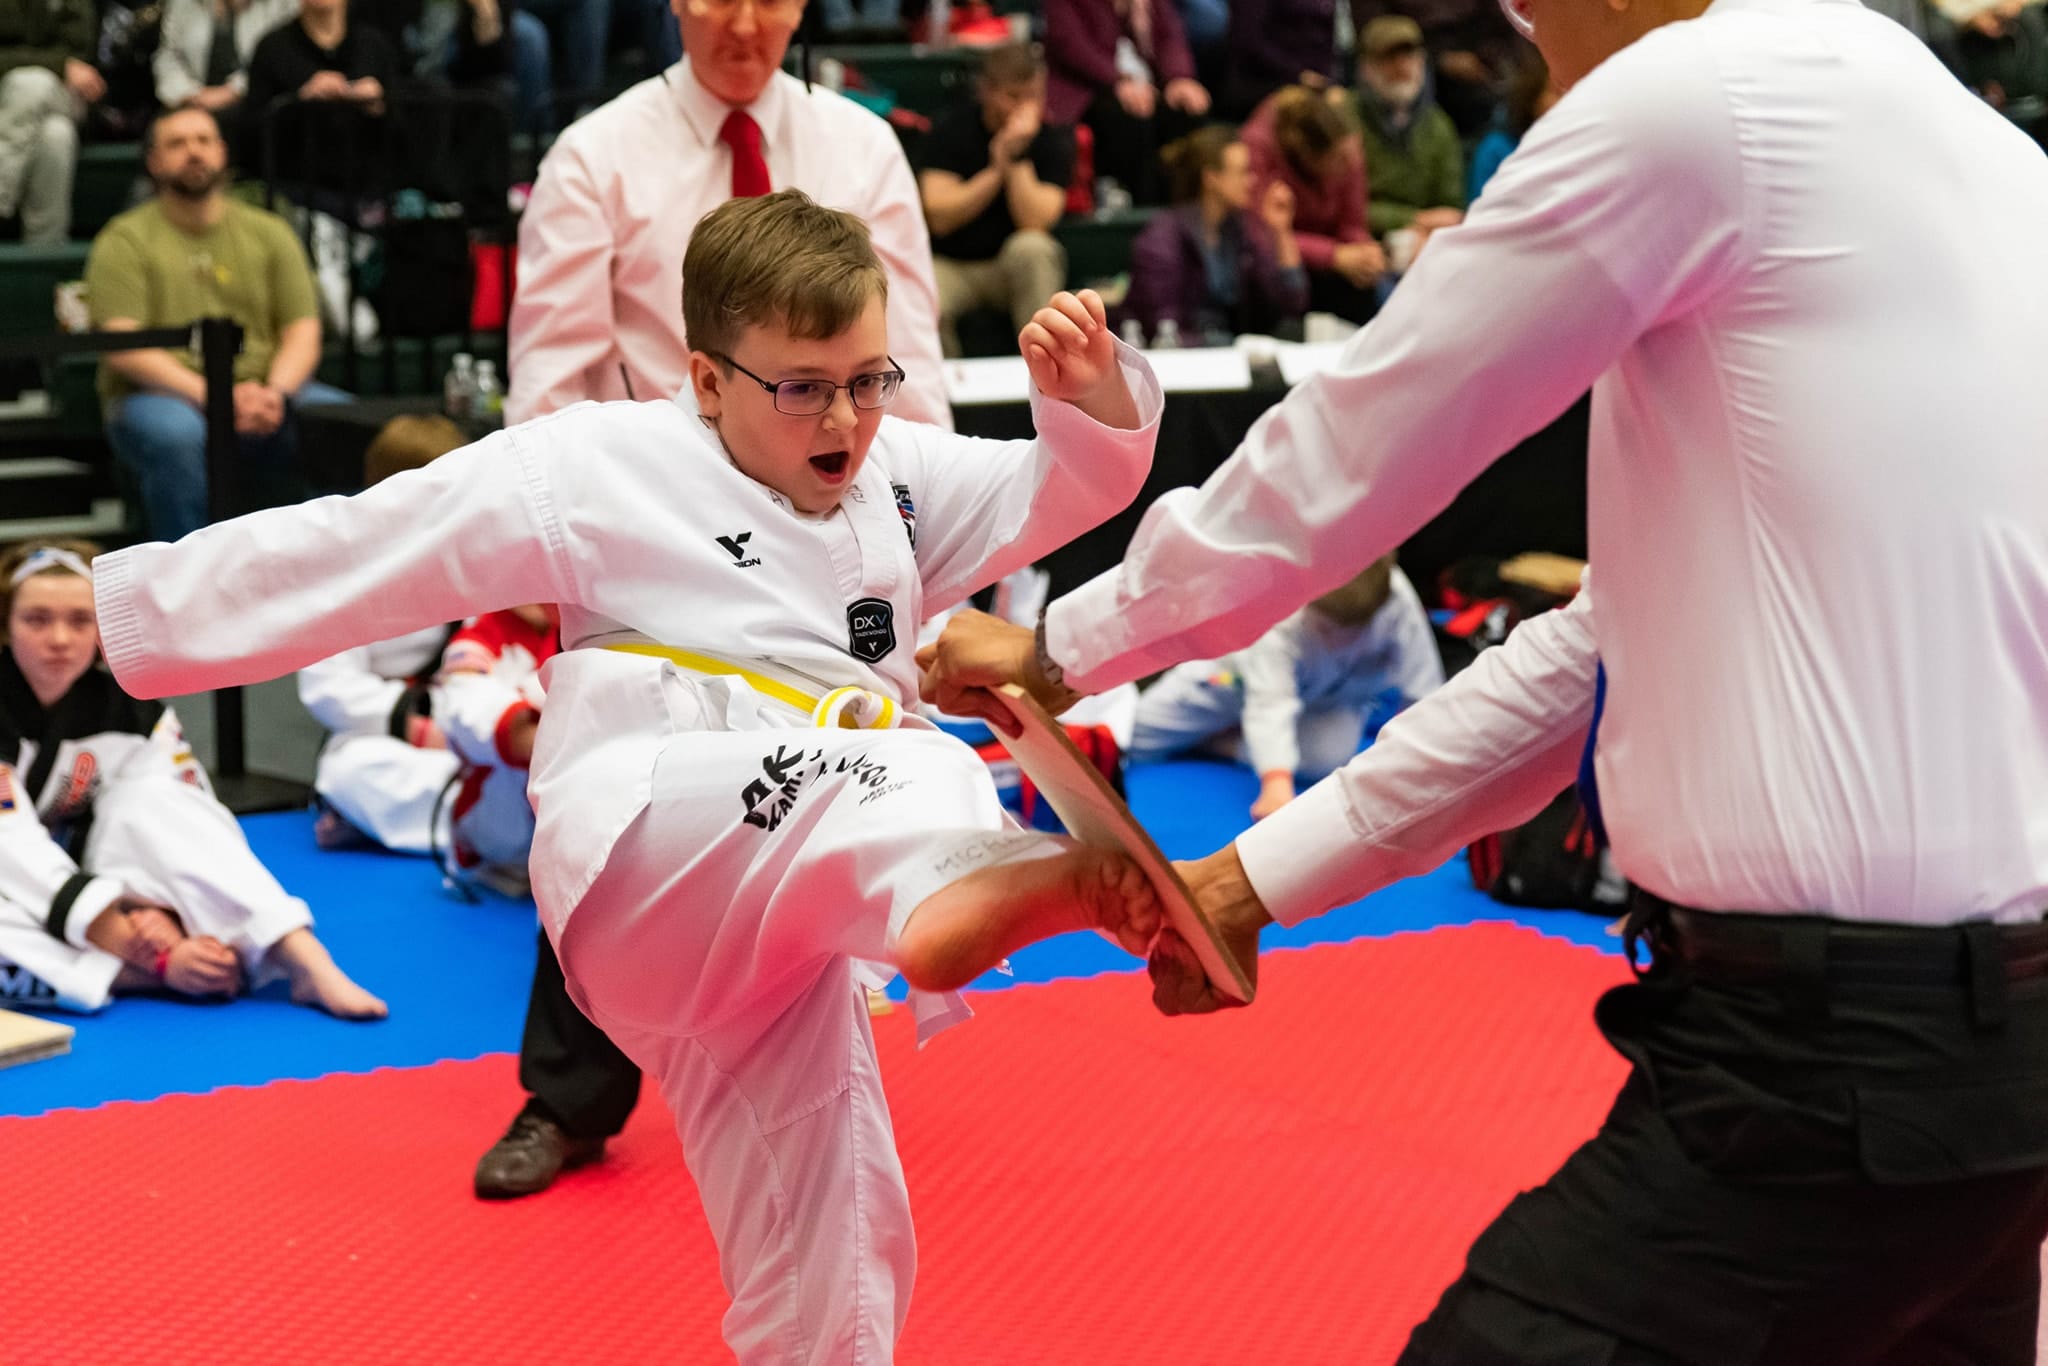 AK Family Taekwondo Programs